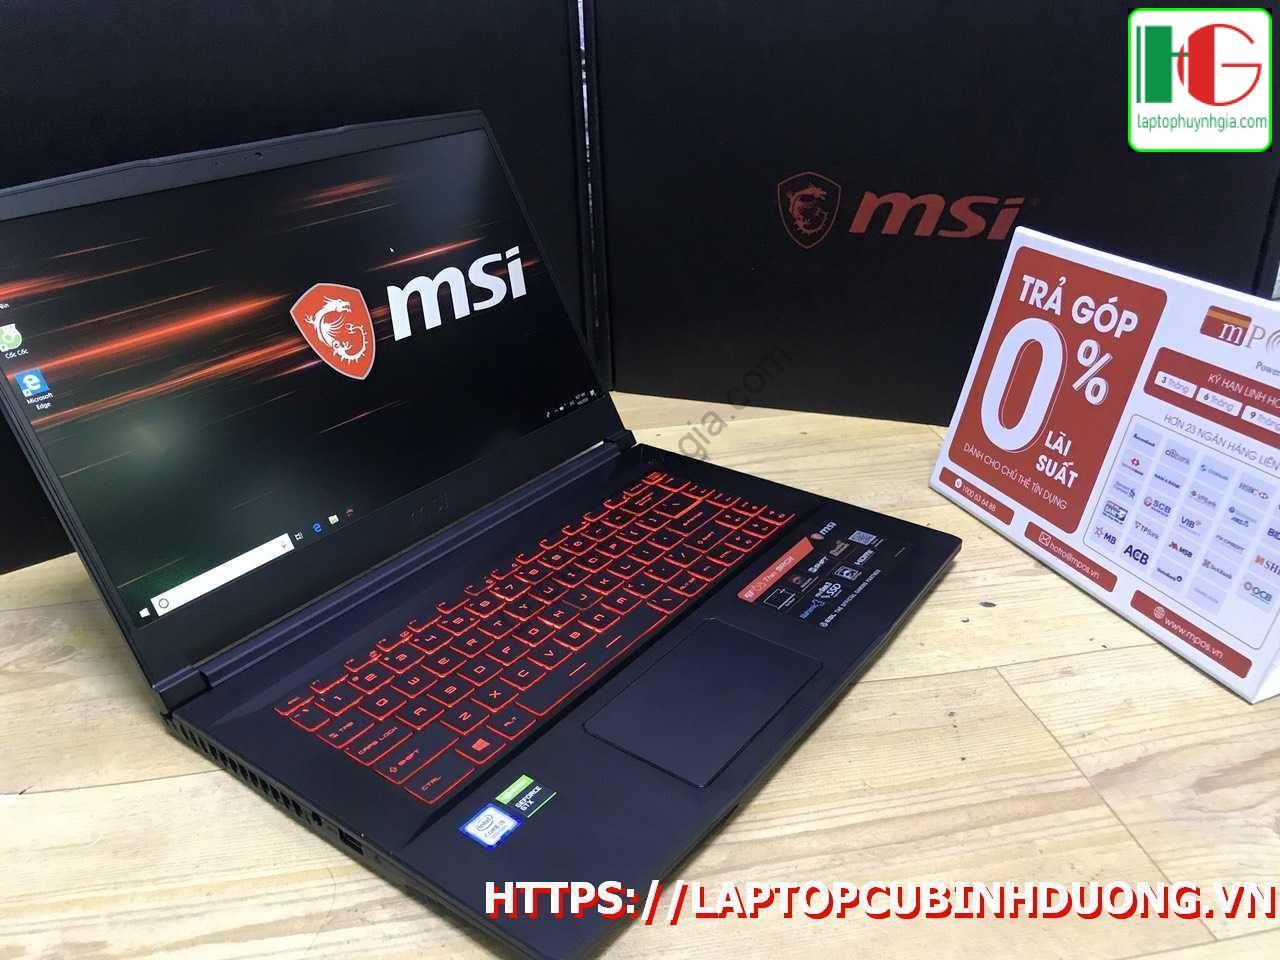 Laptop Msi Gf63 I5 9300h 8g Ssd 512g Nvidia Gtx1050ti Laptopcubinhduong.vn 2 [kích Thước Gốc] Result